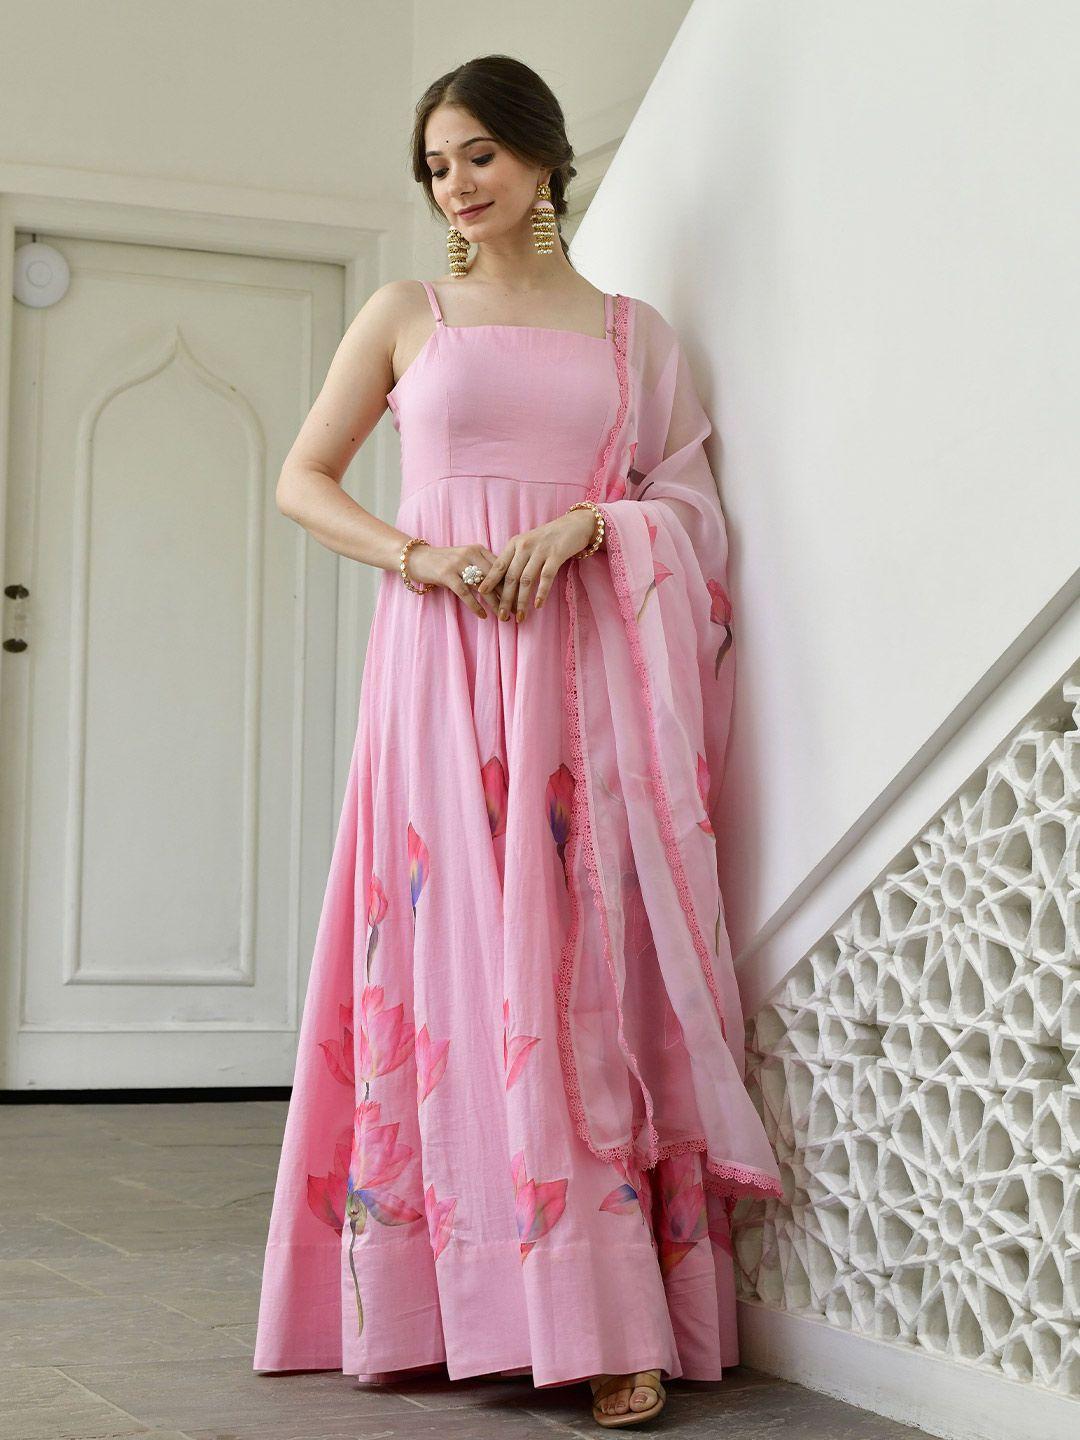 lirose pink maxi dress